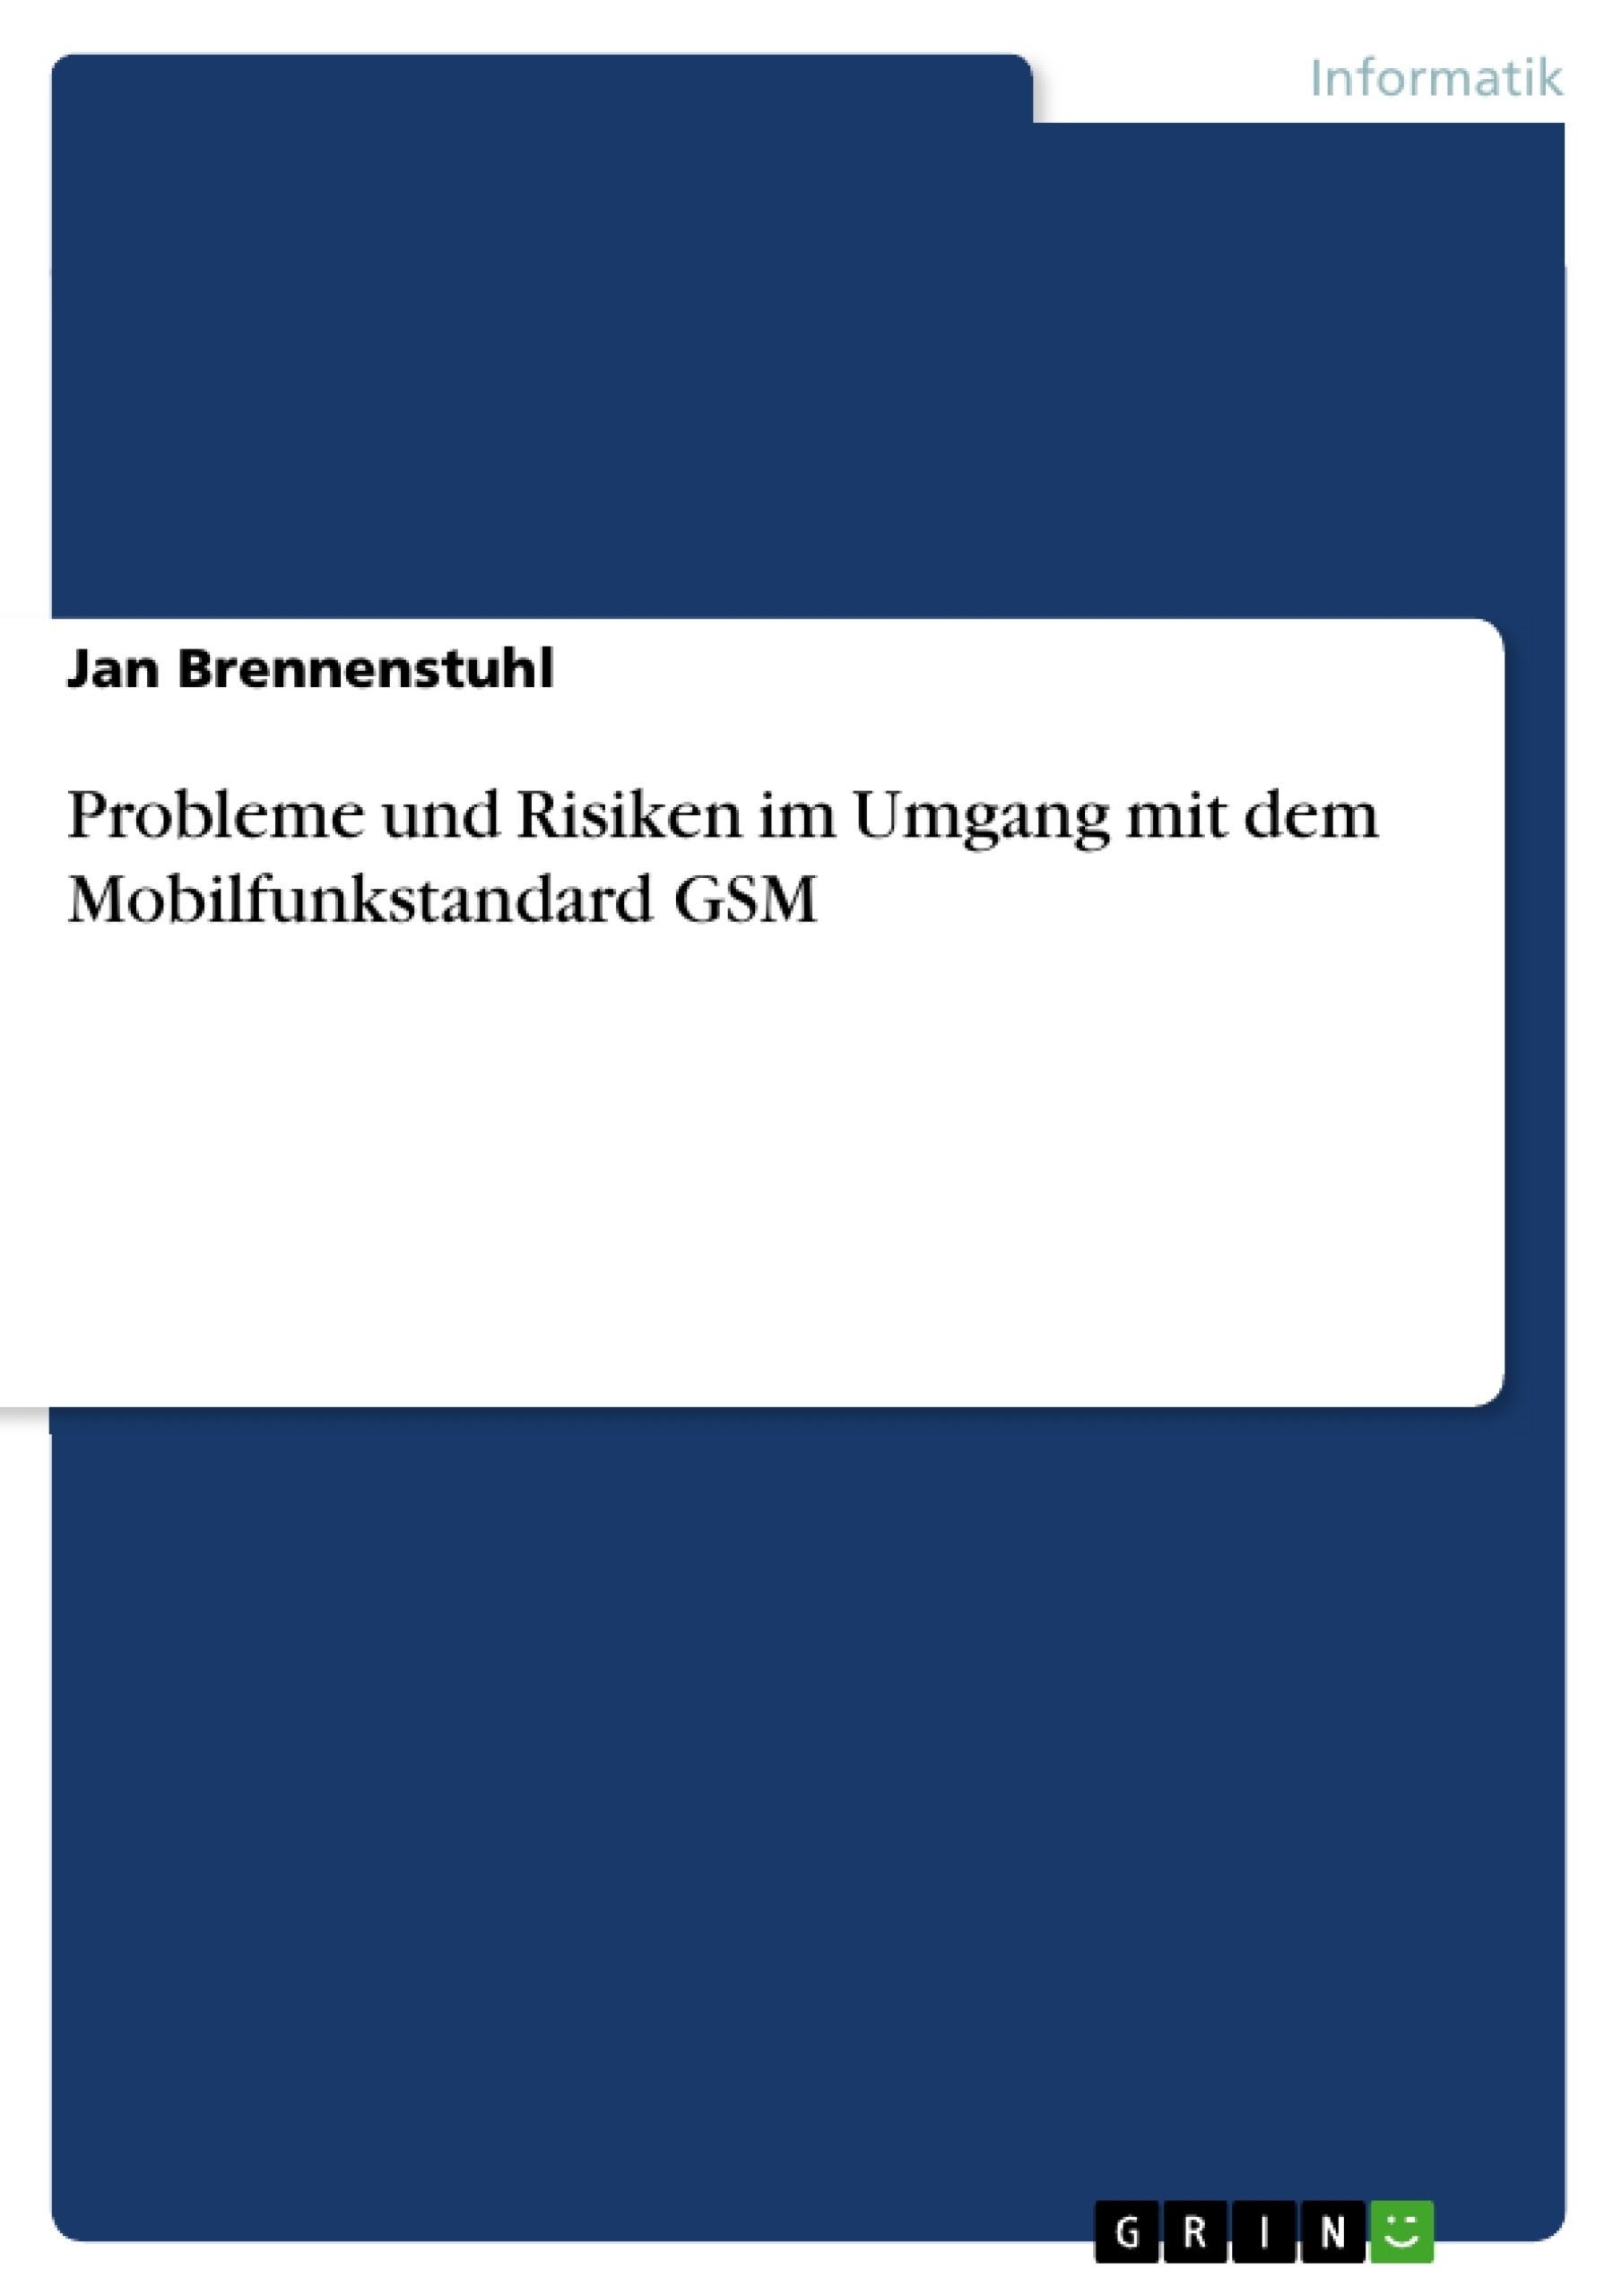 Title: Probleme und Risiken im Umgang mit dem Mobilfunkstandard GSM